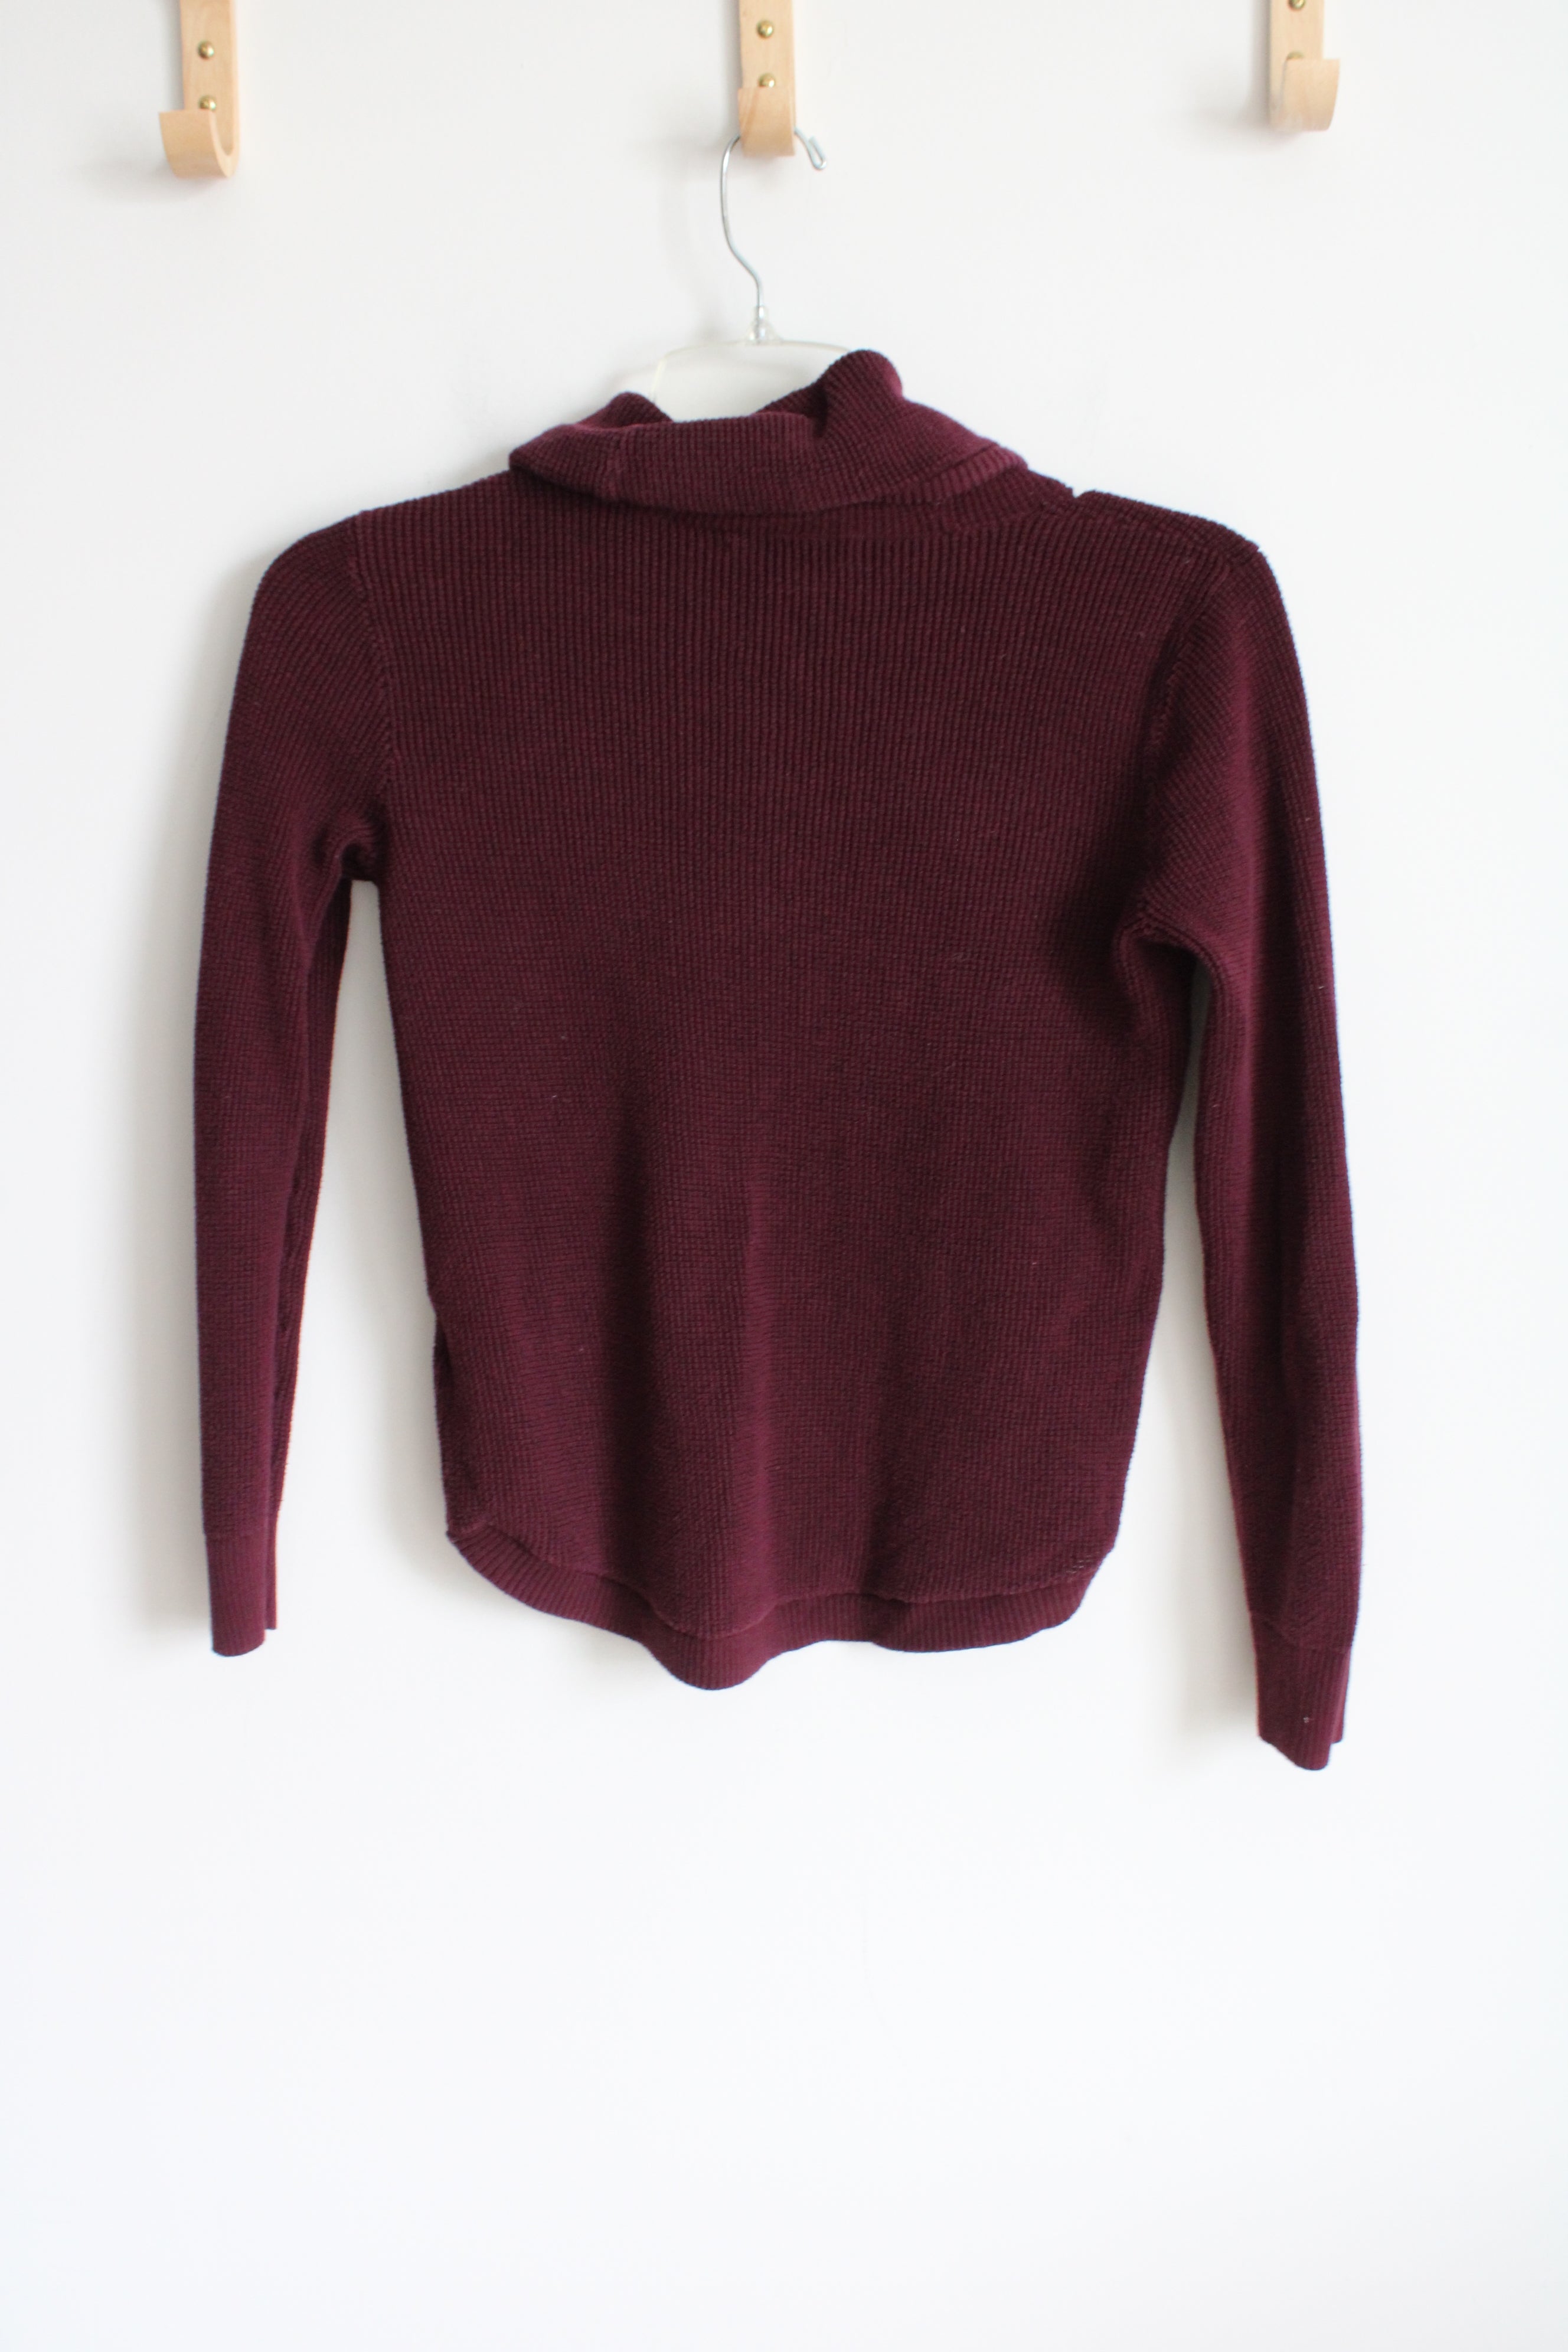 Ralph Lauren Burgundy Knit Cowl Neck Sweater | XS